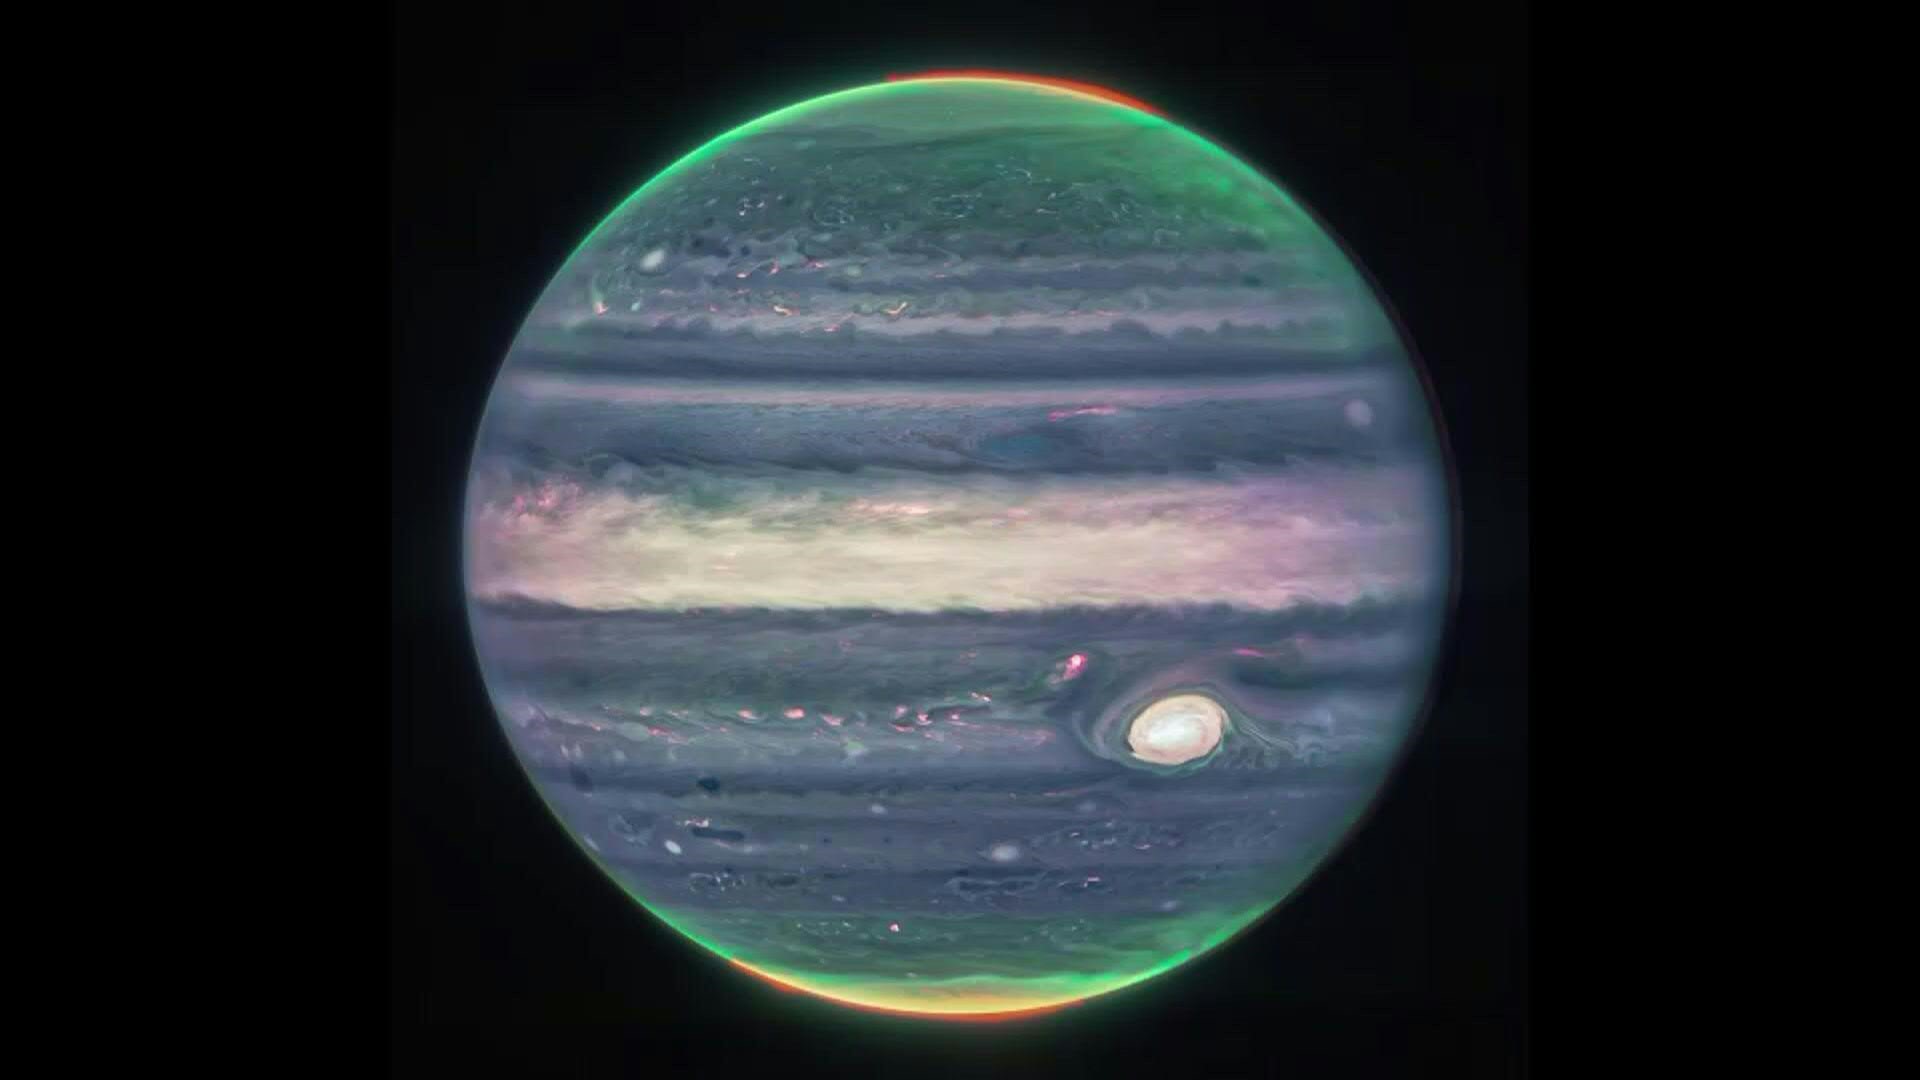 Impresionantes imágenes del planeta Júpiter, que muestran dos lunas diminutas, anillos tenues y auroras en los polos norte y sur, fueron tomadas por el telescopio espacial James Webb de la NASA, informó la agencia espacial estadounidense.